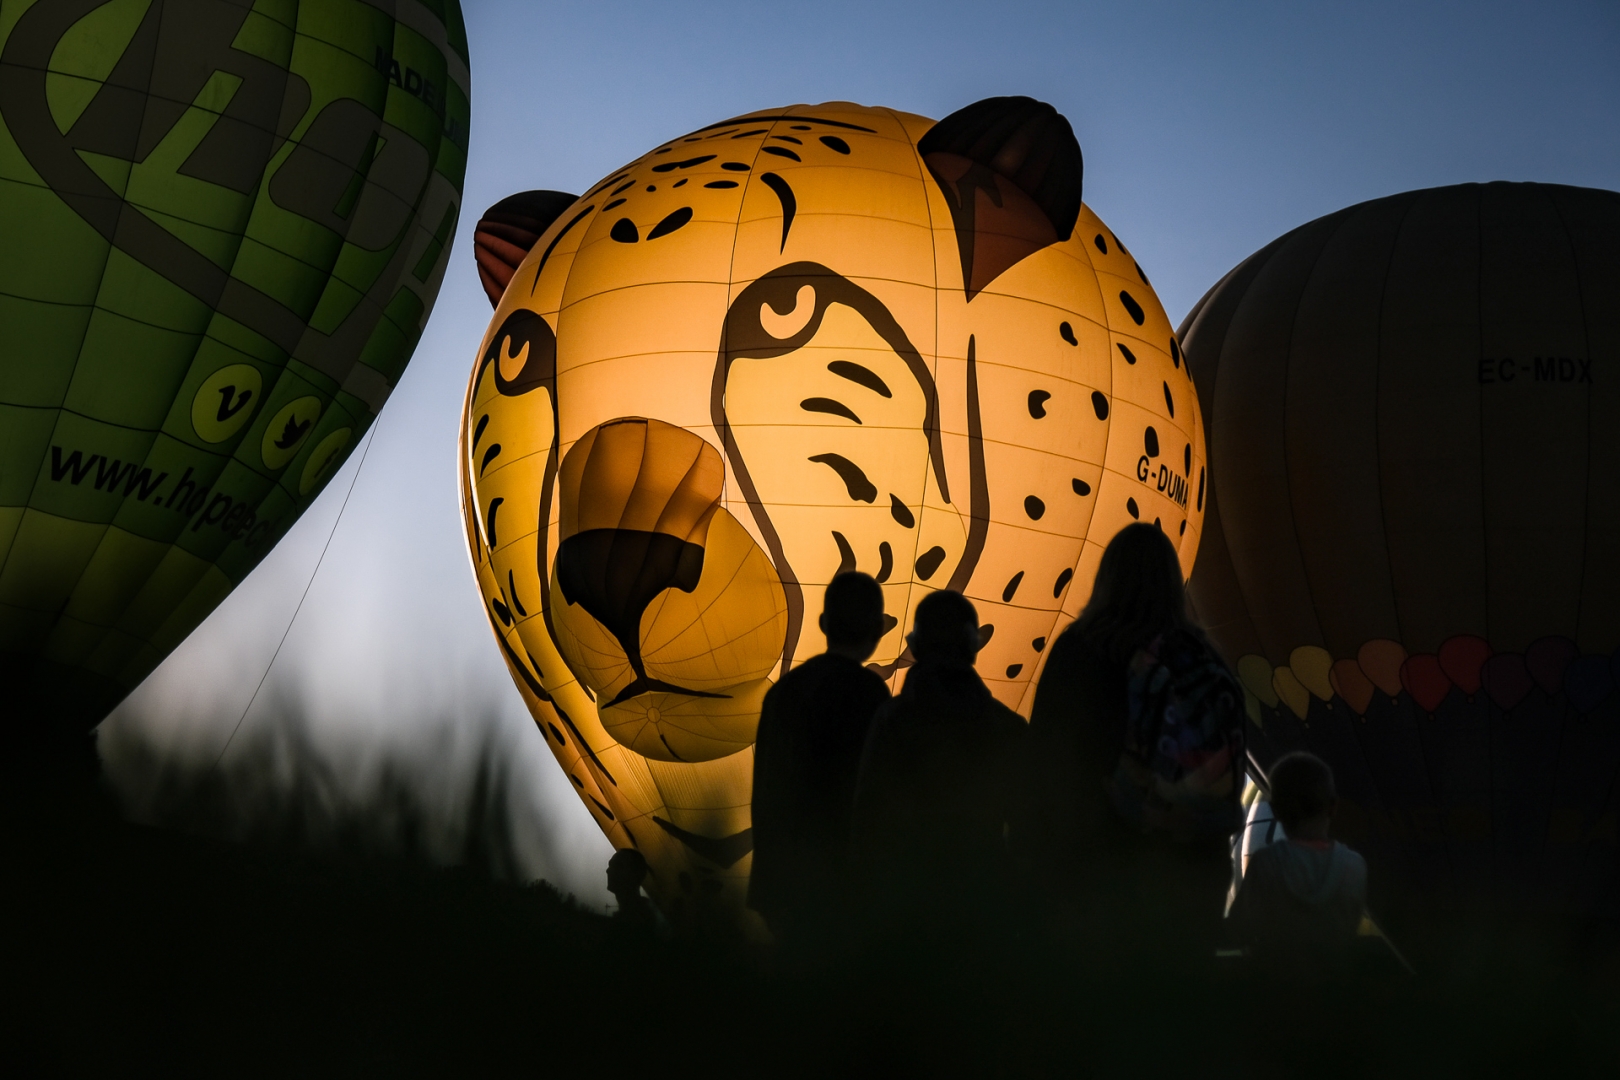 Cheeta balloon